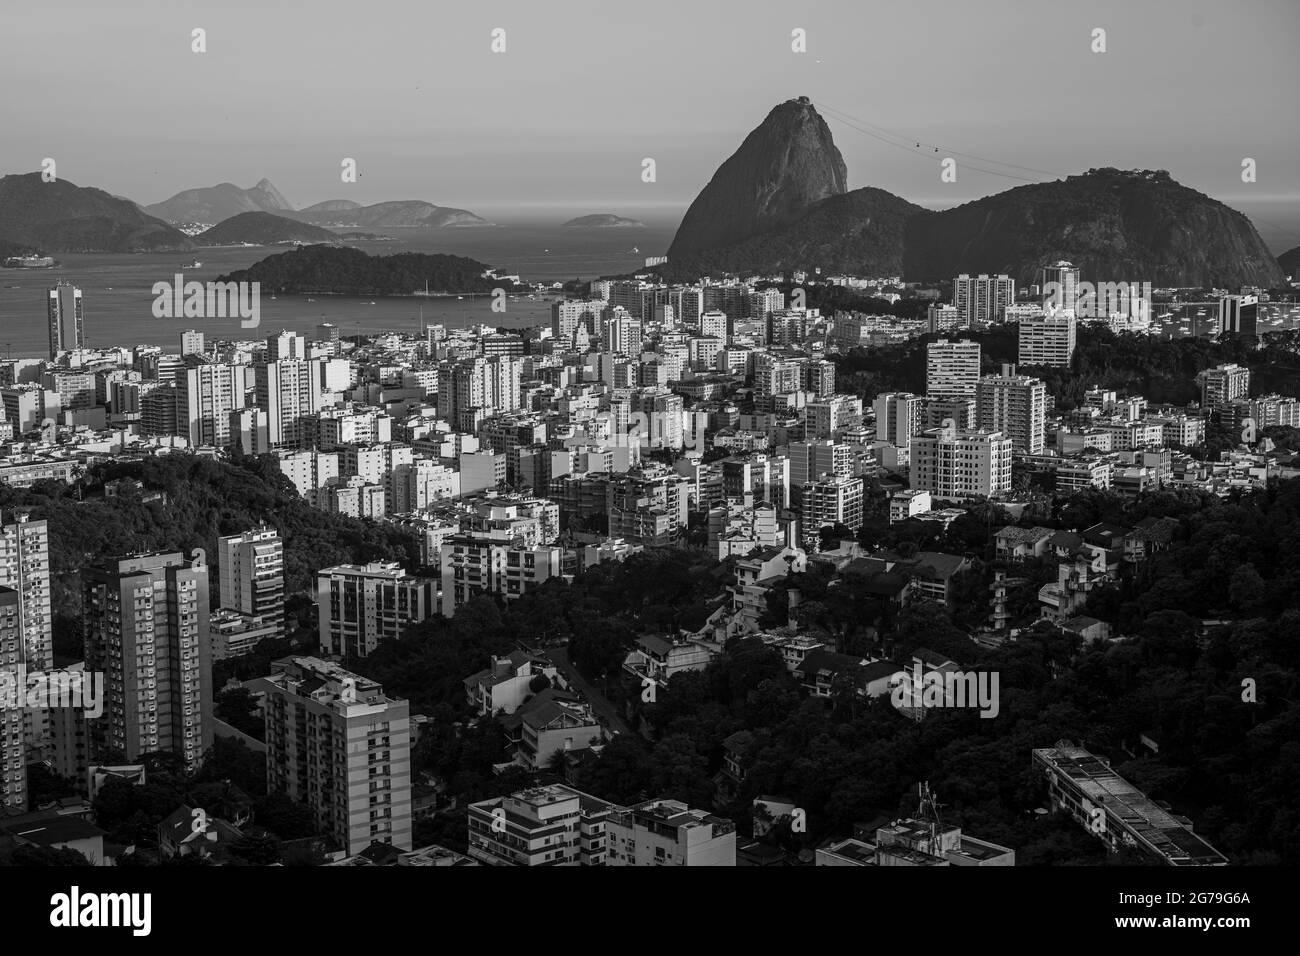 Montagne de Sugarloaf et Botafogo à Rio de Janeiro, Brésil Banque D'Images